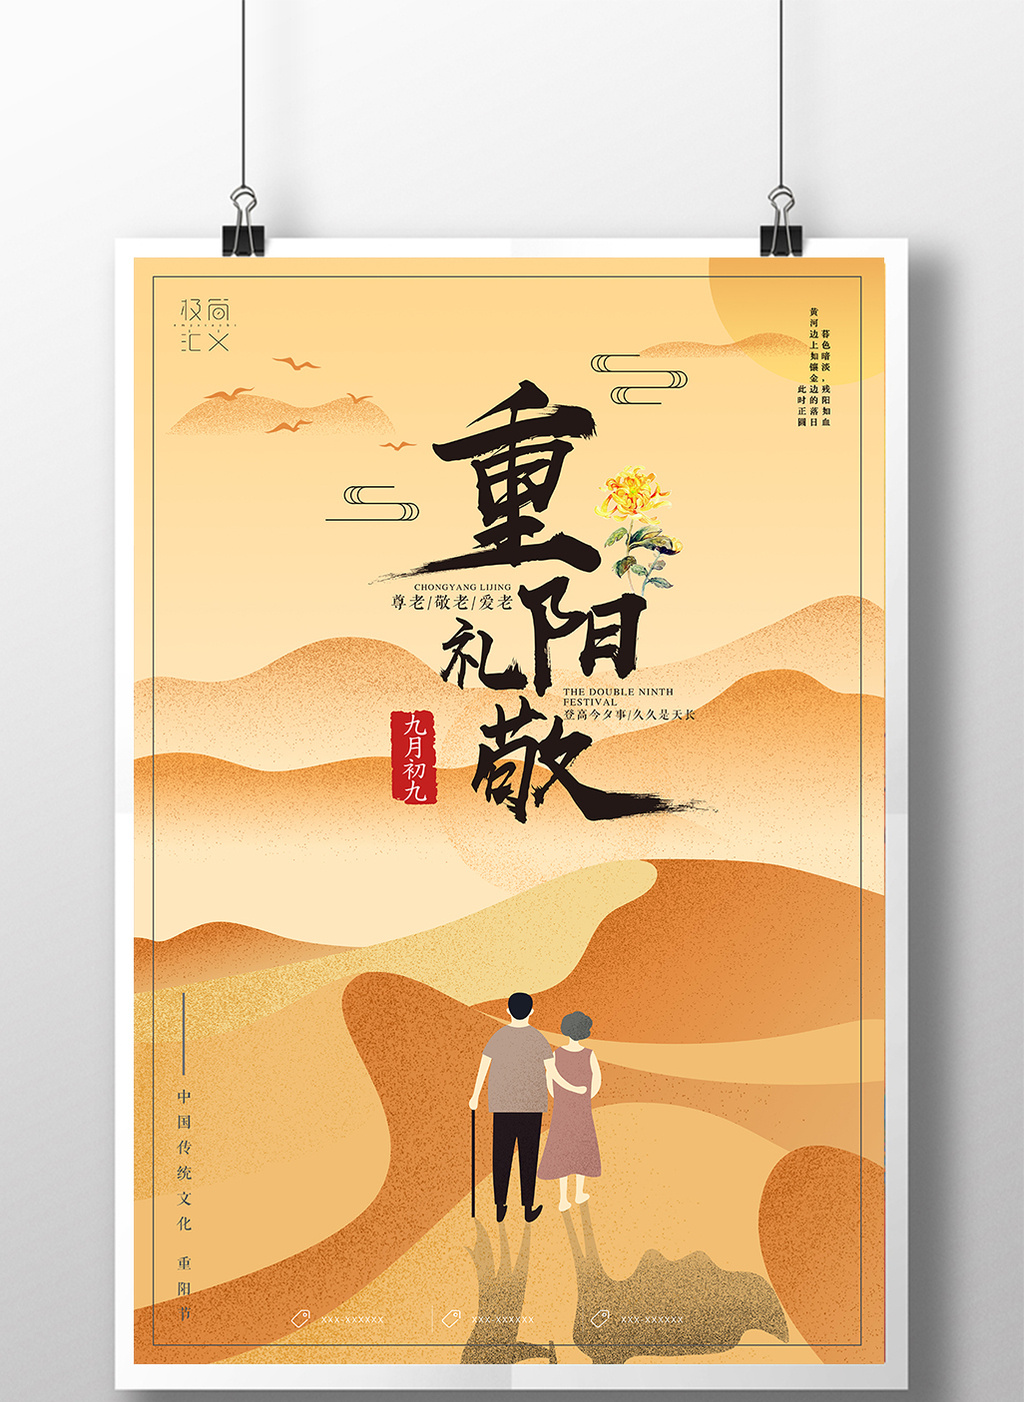 简约创意插画风格重阳节宣传海报